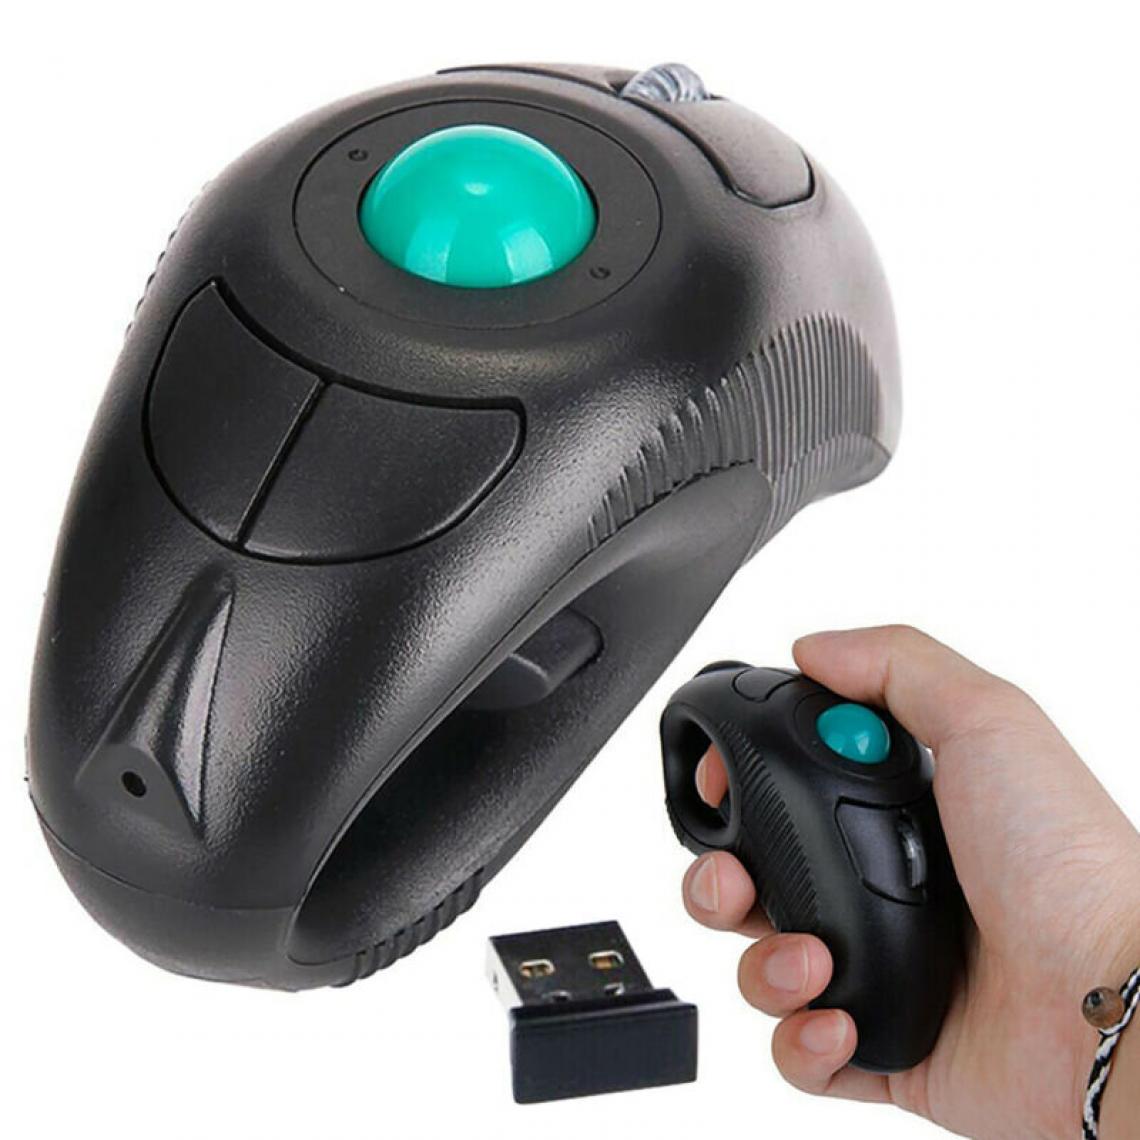 Universal - Récepteur USB pour PC sans fil, ordinateur portable, trackball à doigt, souris intelligente.(Le noir) - Souris